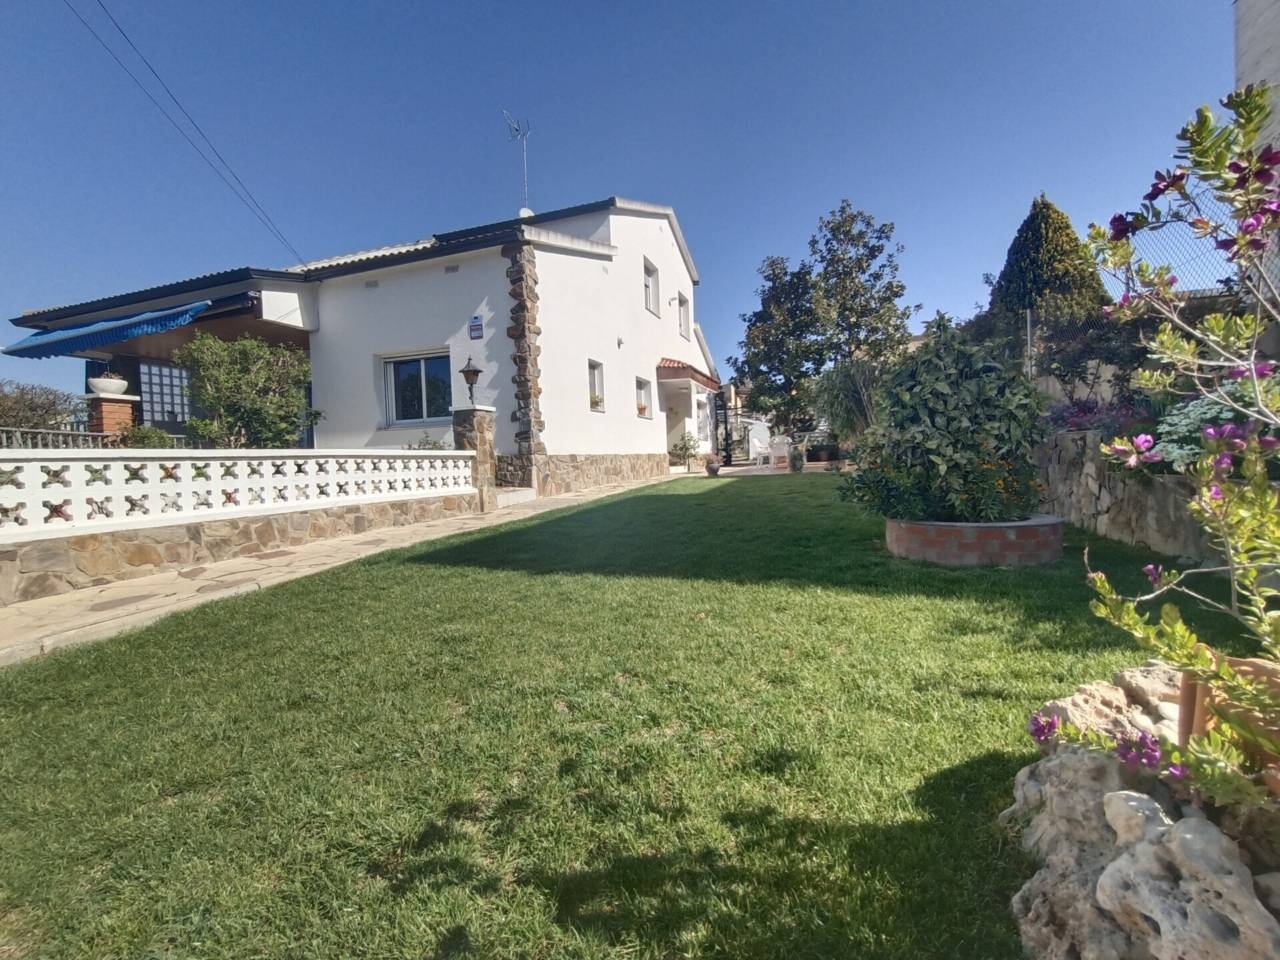 Casa unifamiliar en venta en Lliçà de Vall